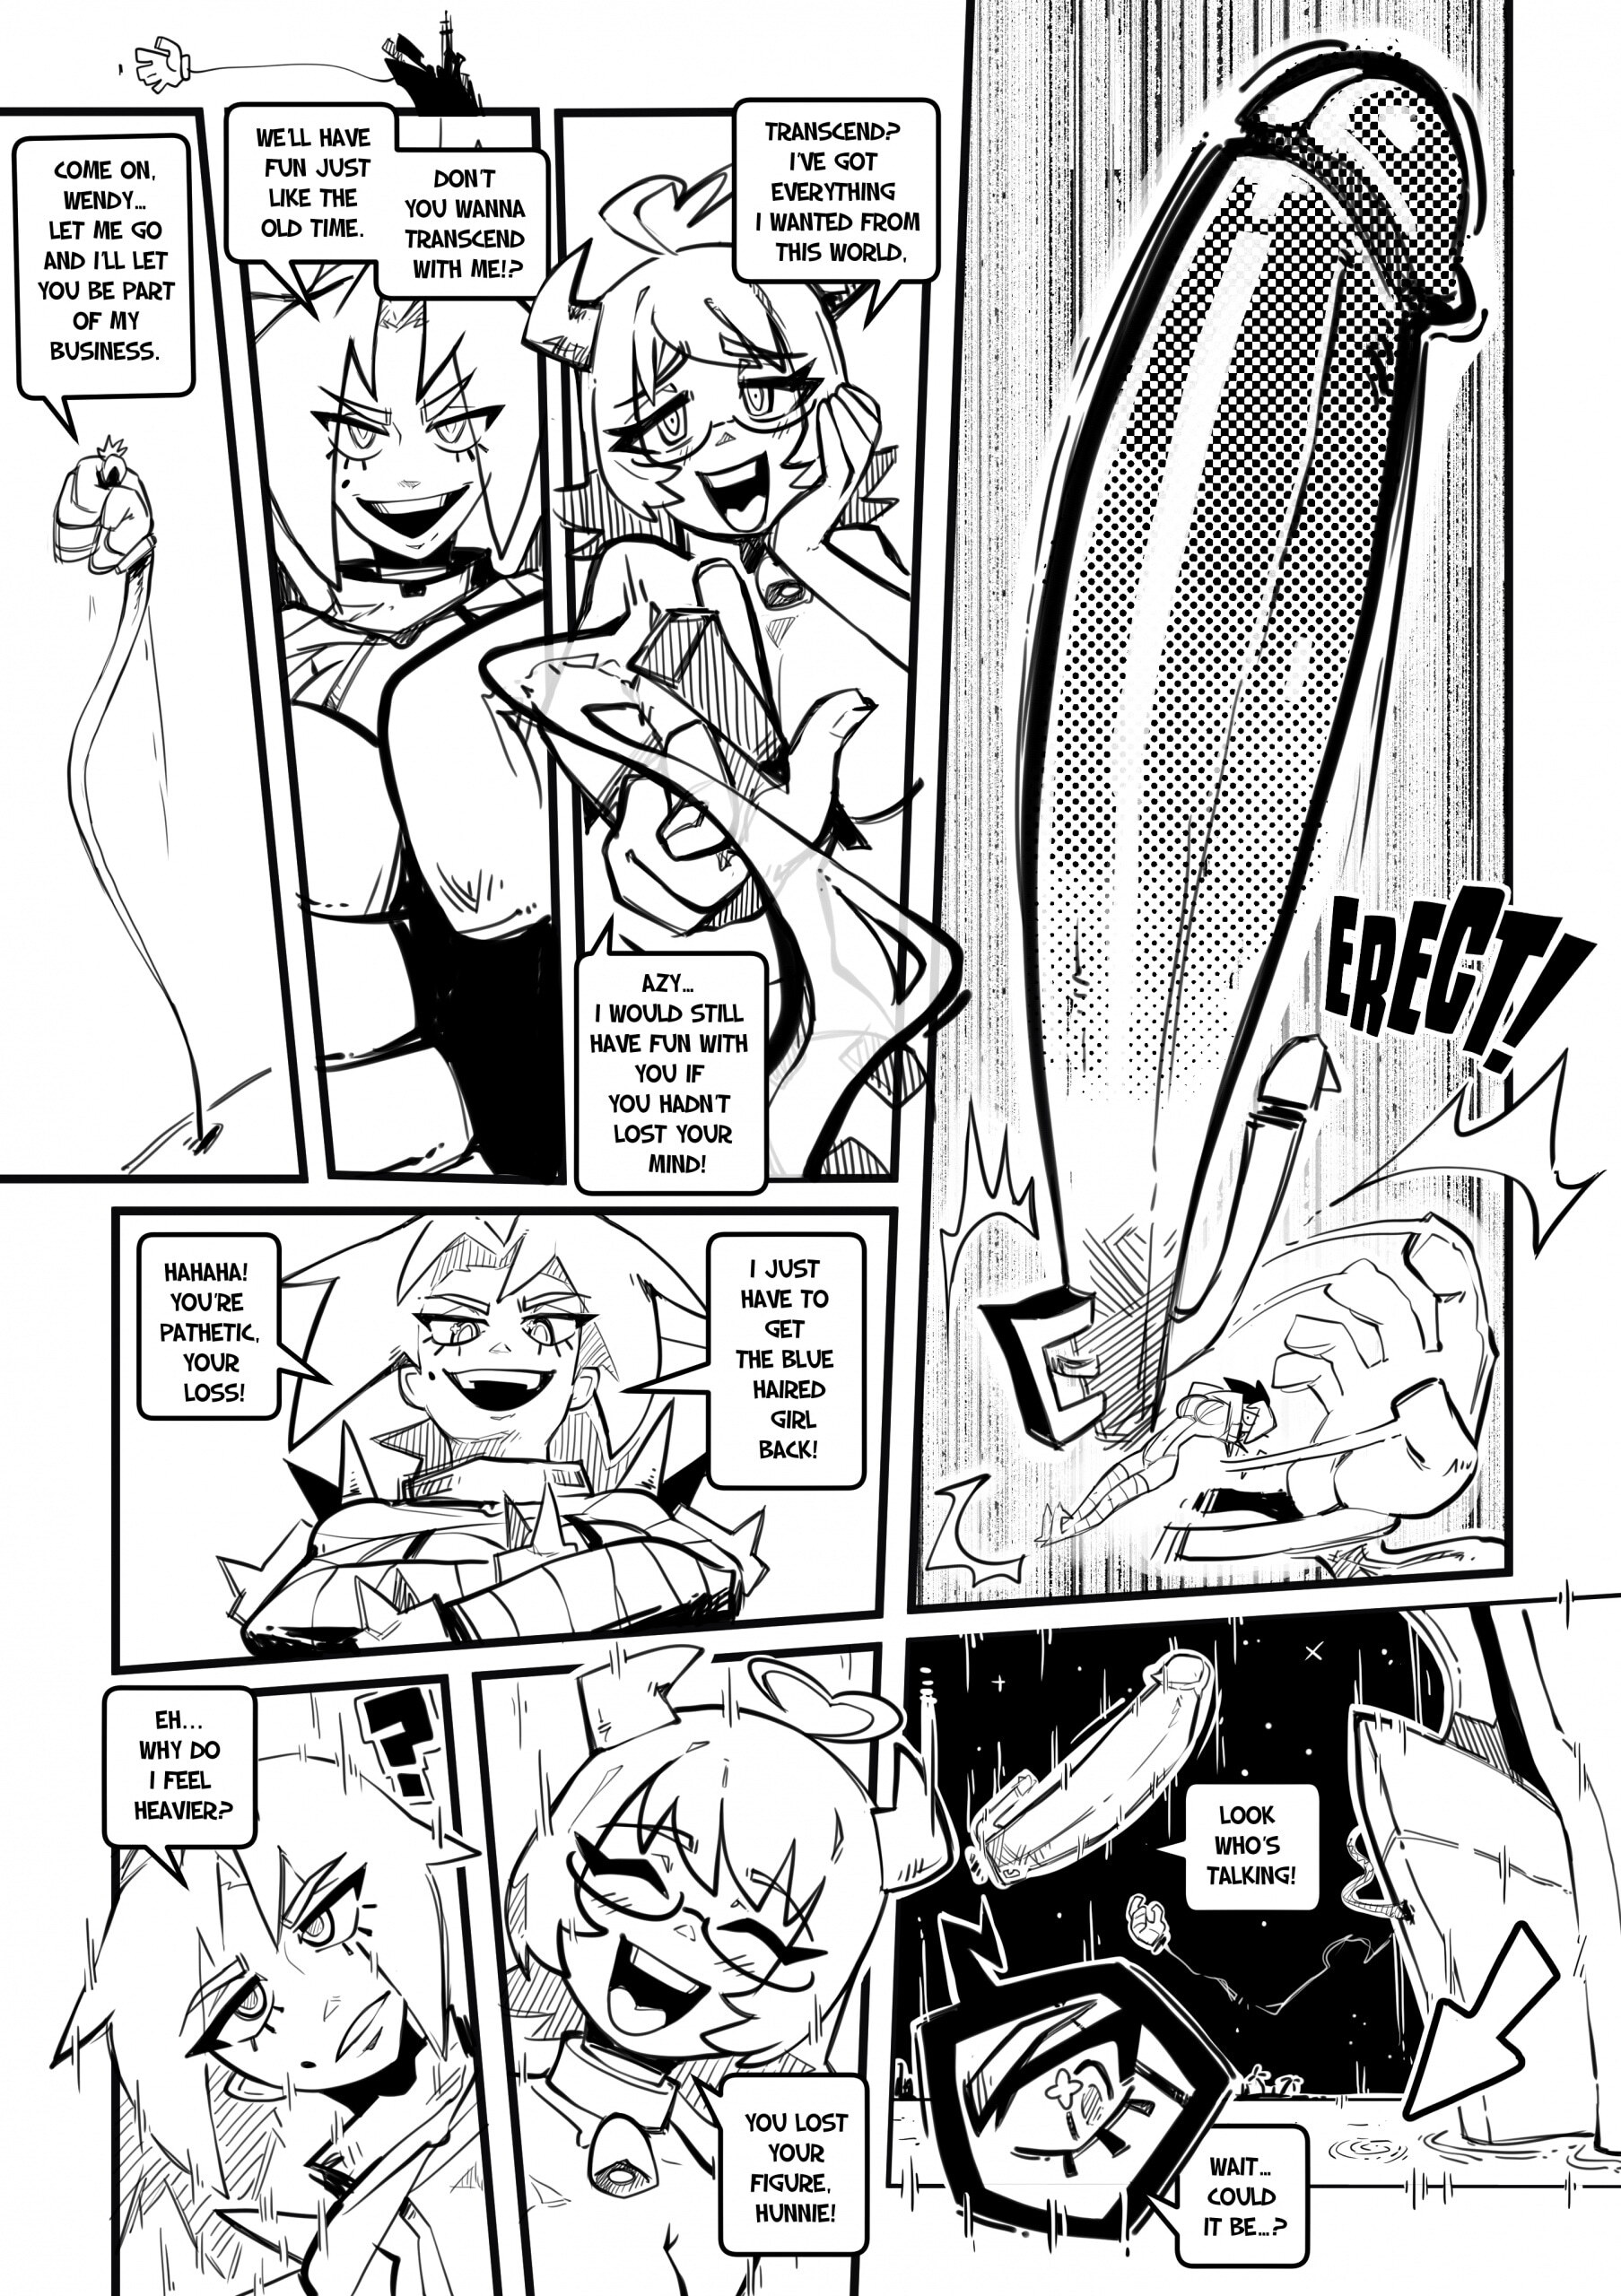 Skarpworld 10: Milk Crisis 4 - Gravity - Page 22